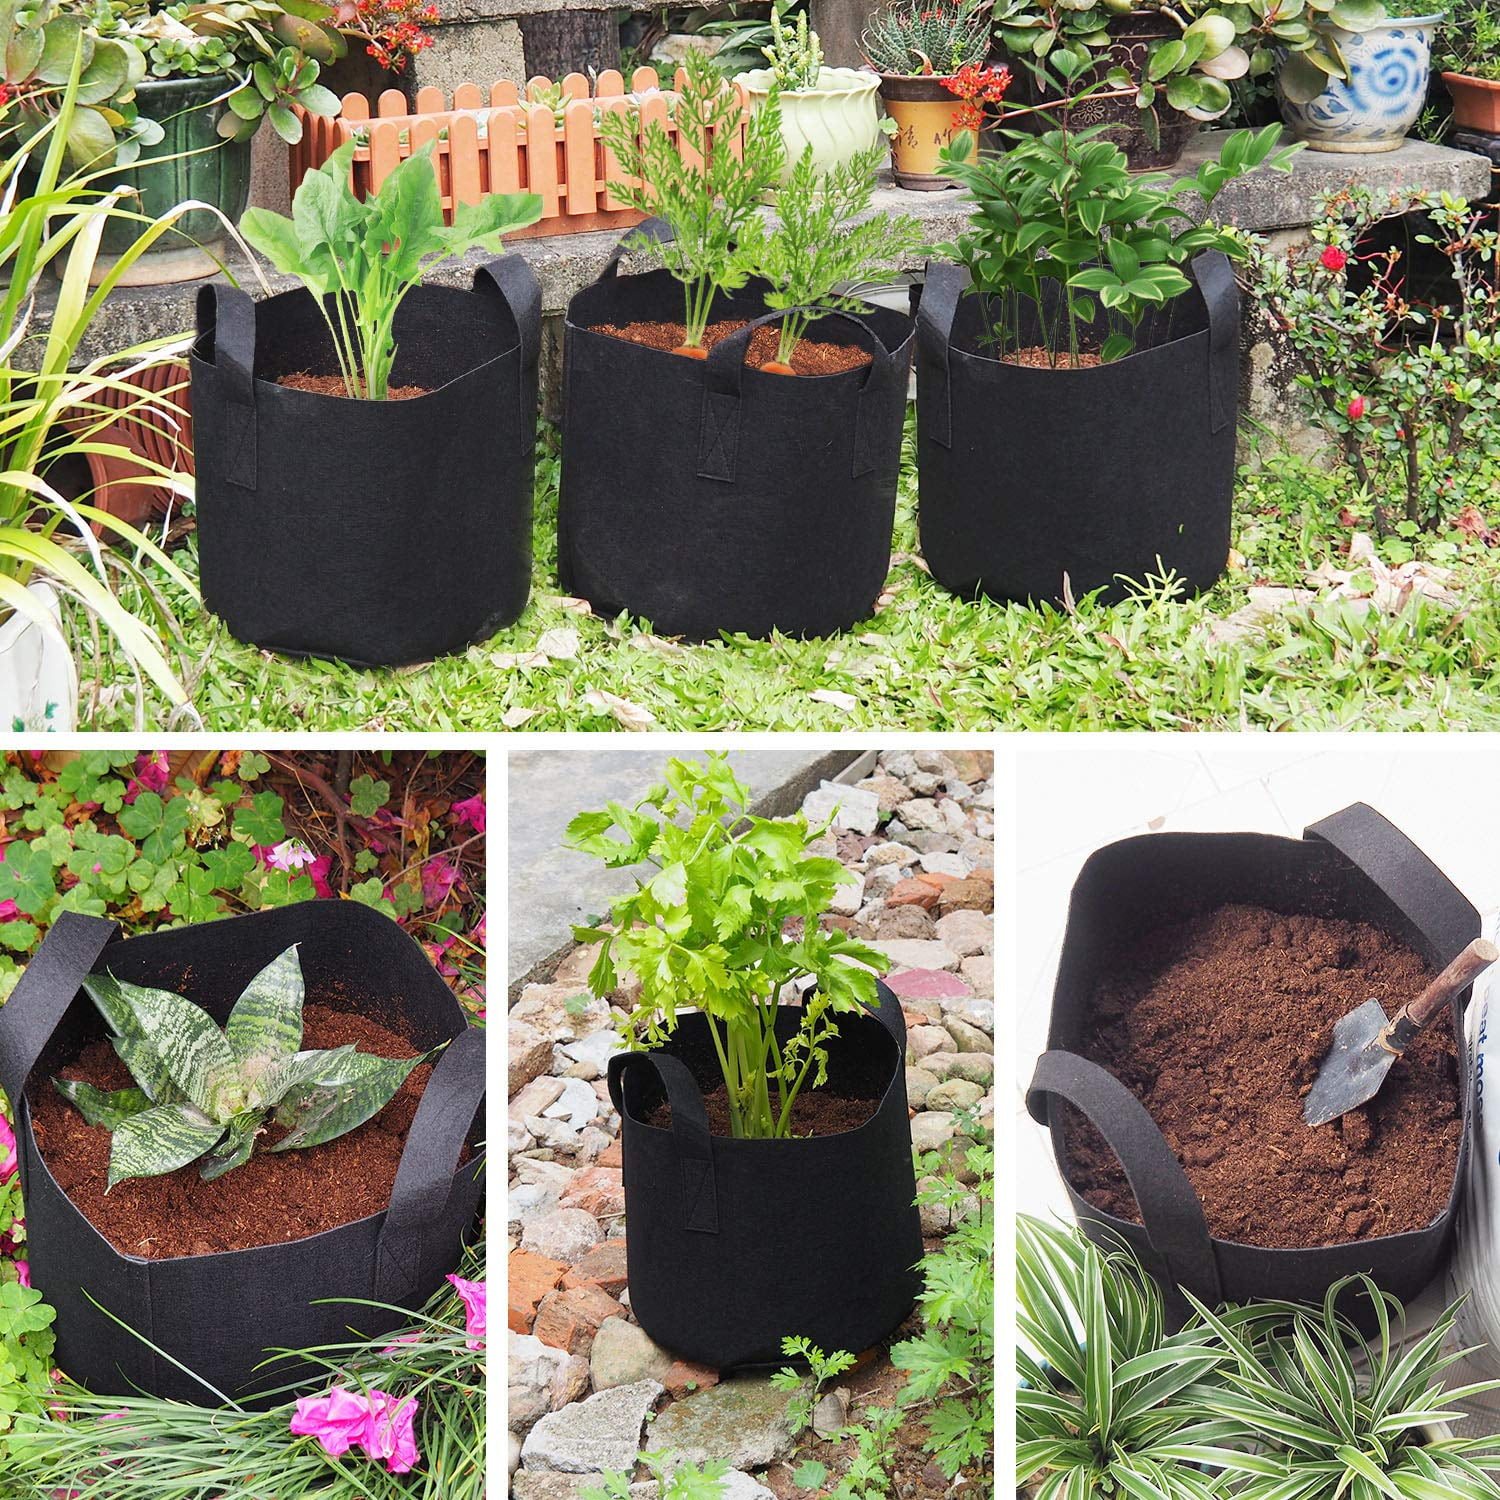 2 Pcs 7 Gallon Garden Potato Grow Bags Vegetable Planter Tub with Access Flap 